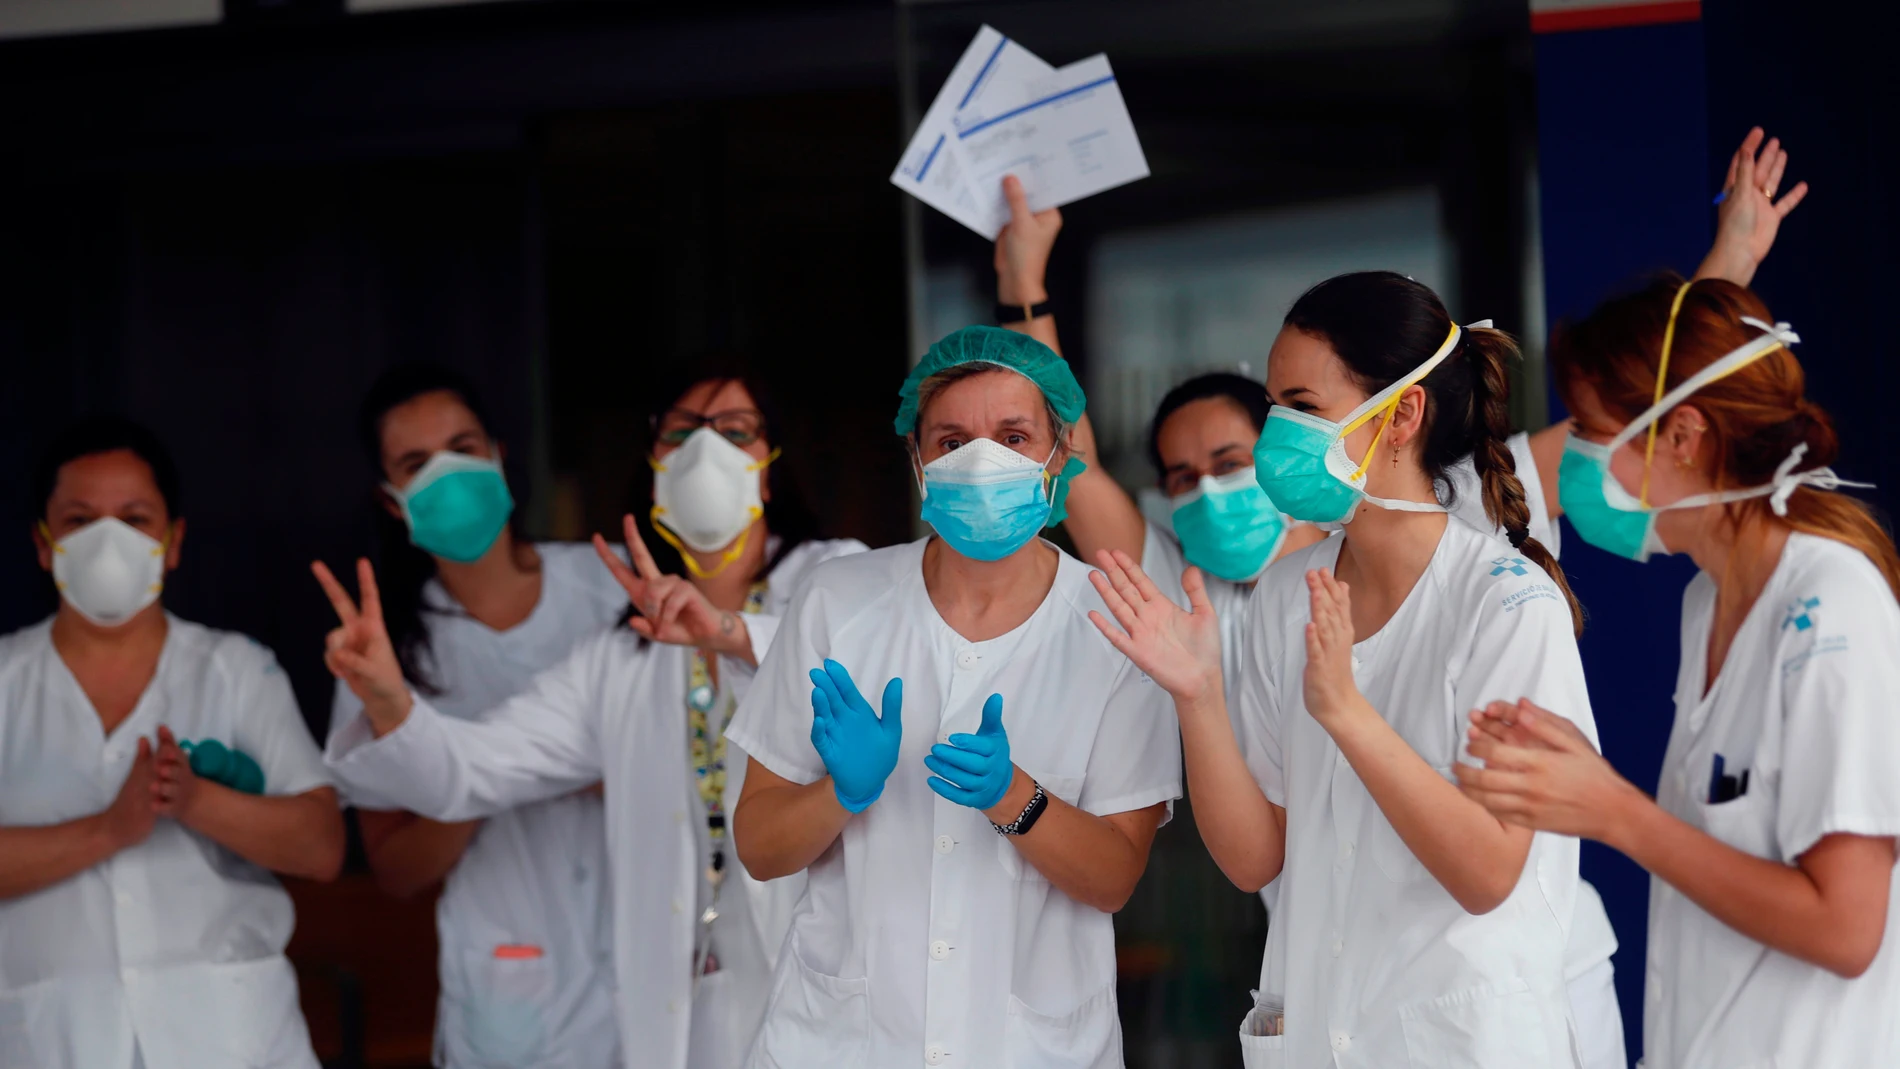 Un grupo de sanitarios de Urgencias del Hospital Universitario Central de Asturias (HUCA) agradecen en plena pandemia las muestras de reconocimiento diario a su labor, en Oviedo